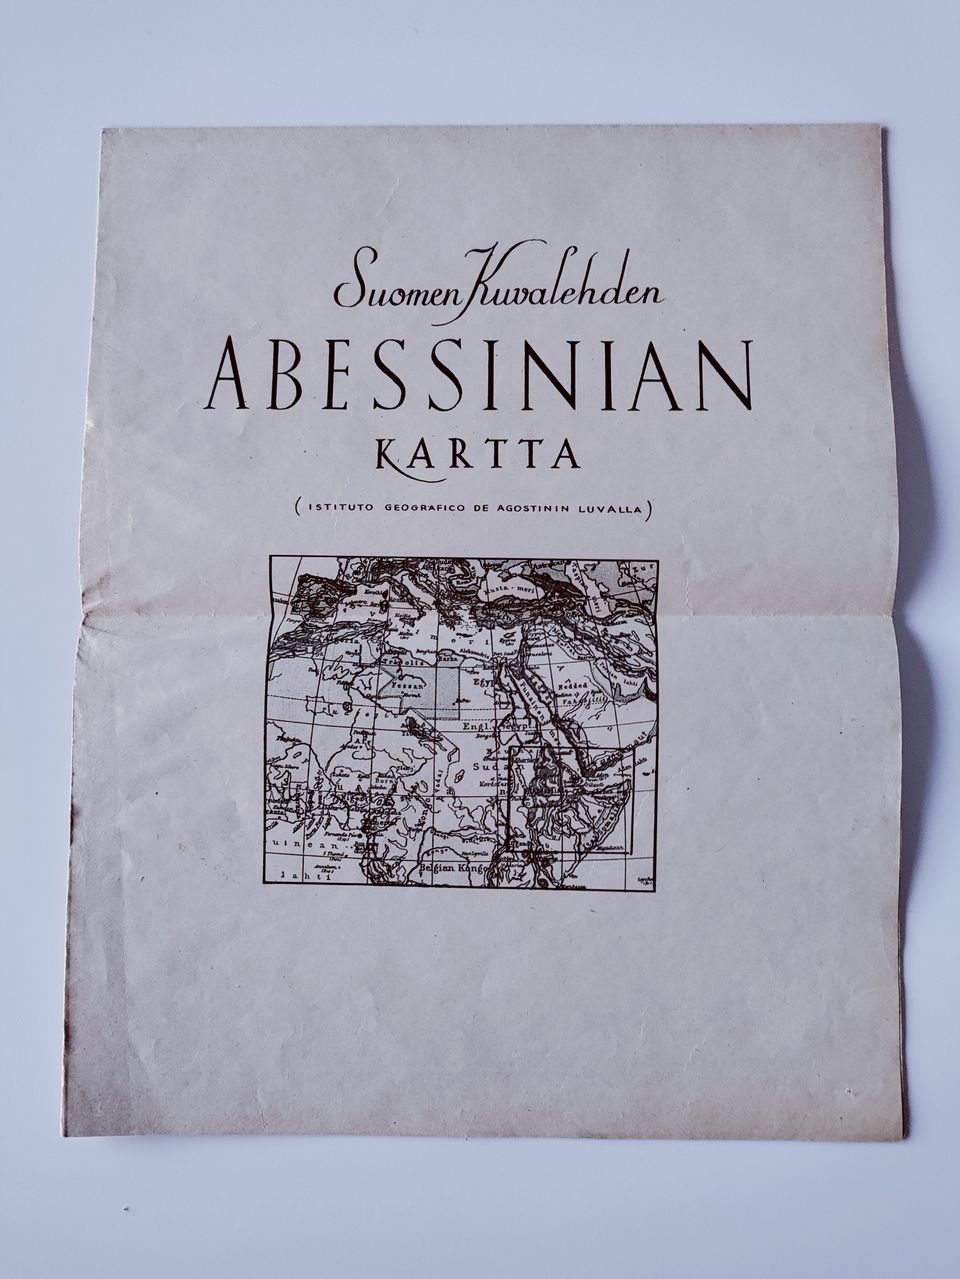 Abessinian kartta - Suomen Kuvalehti 1935